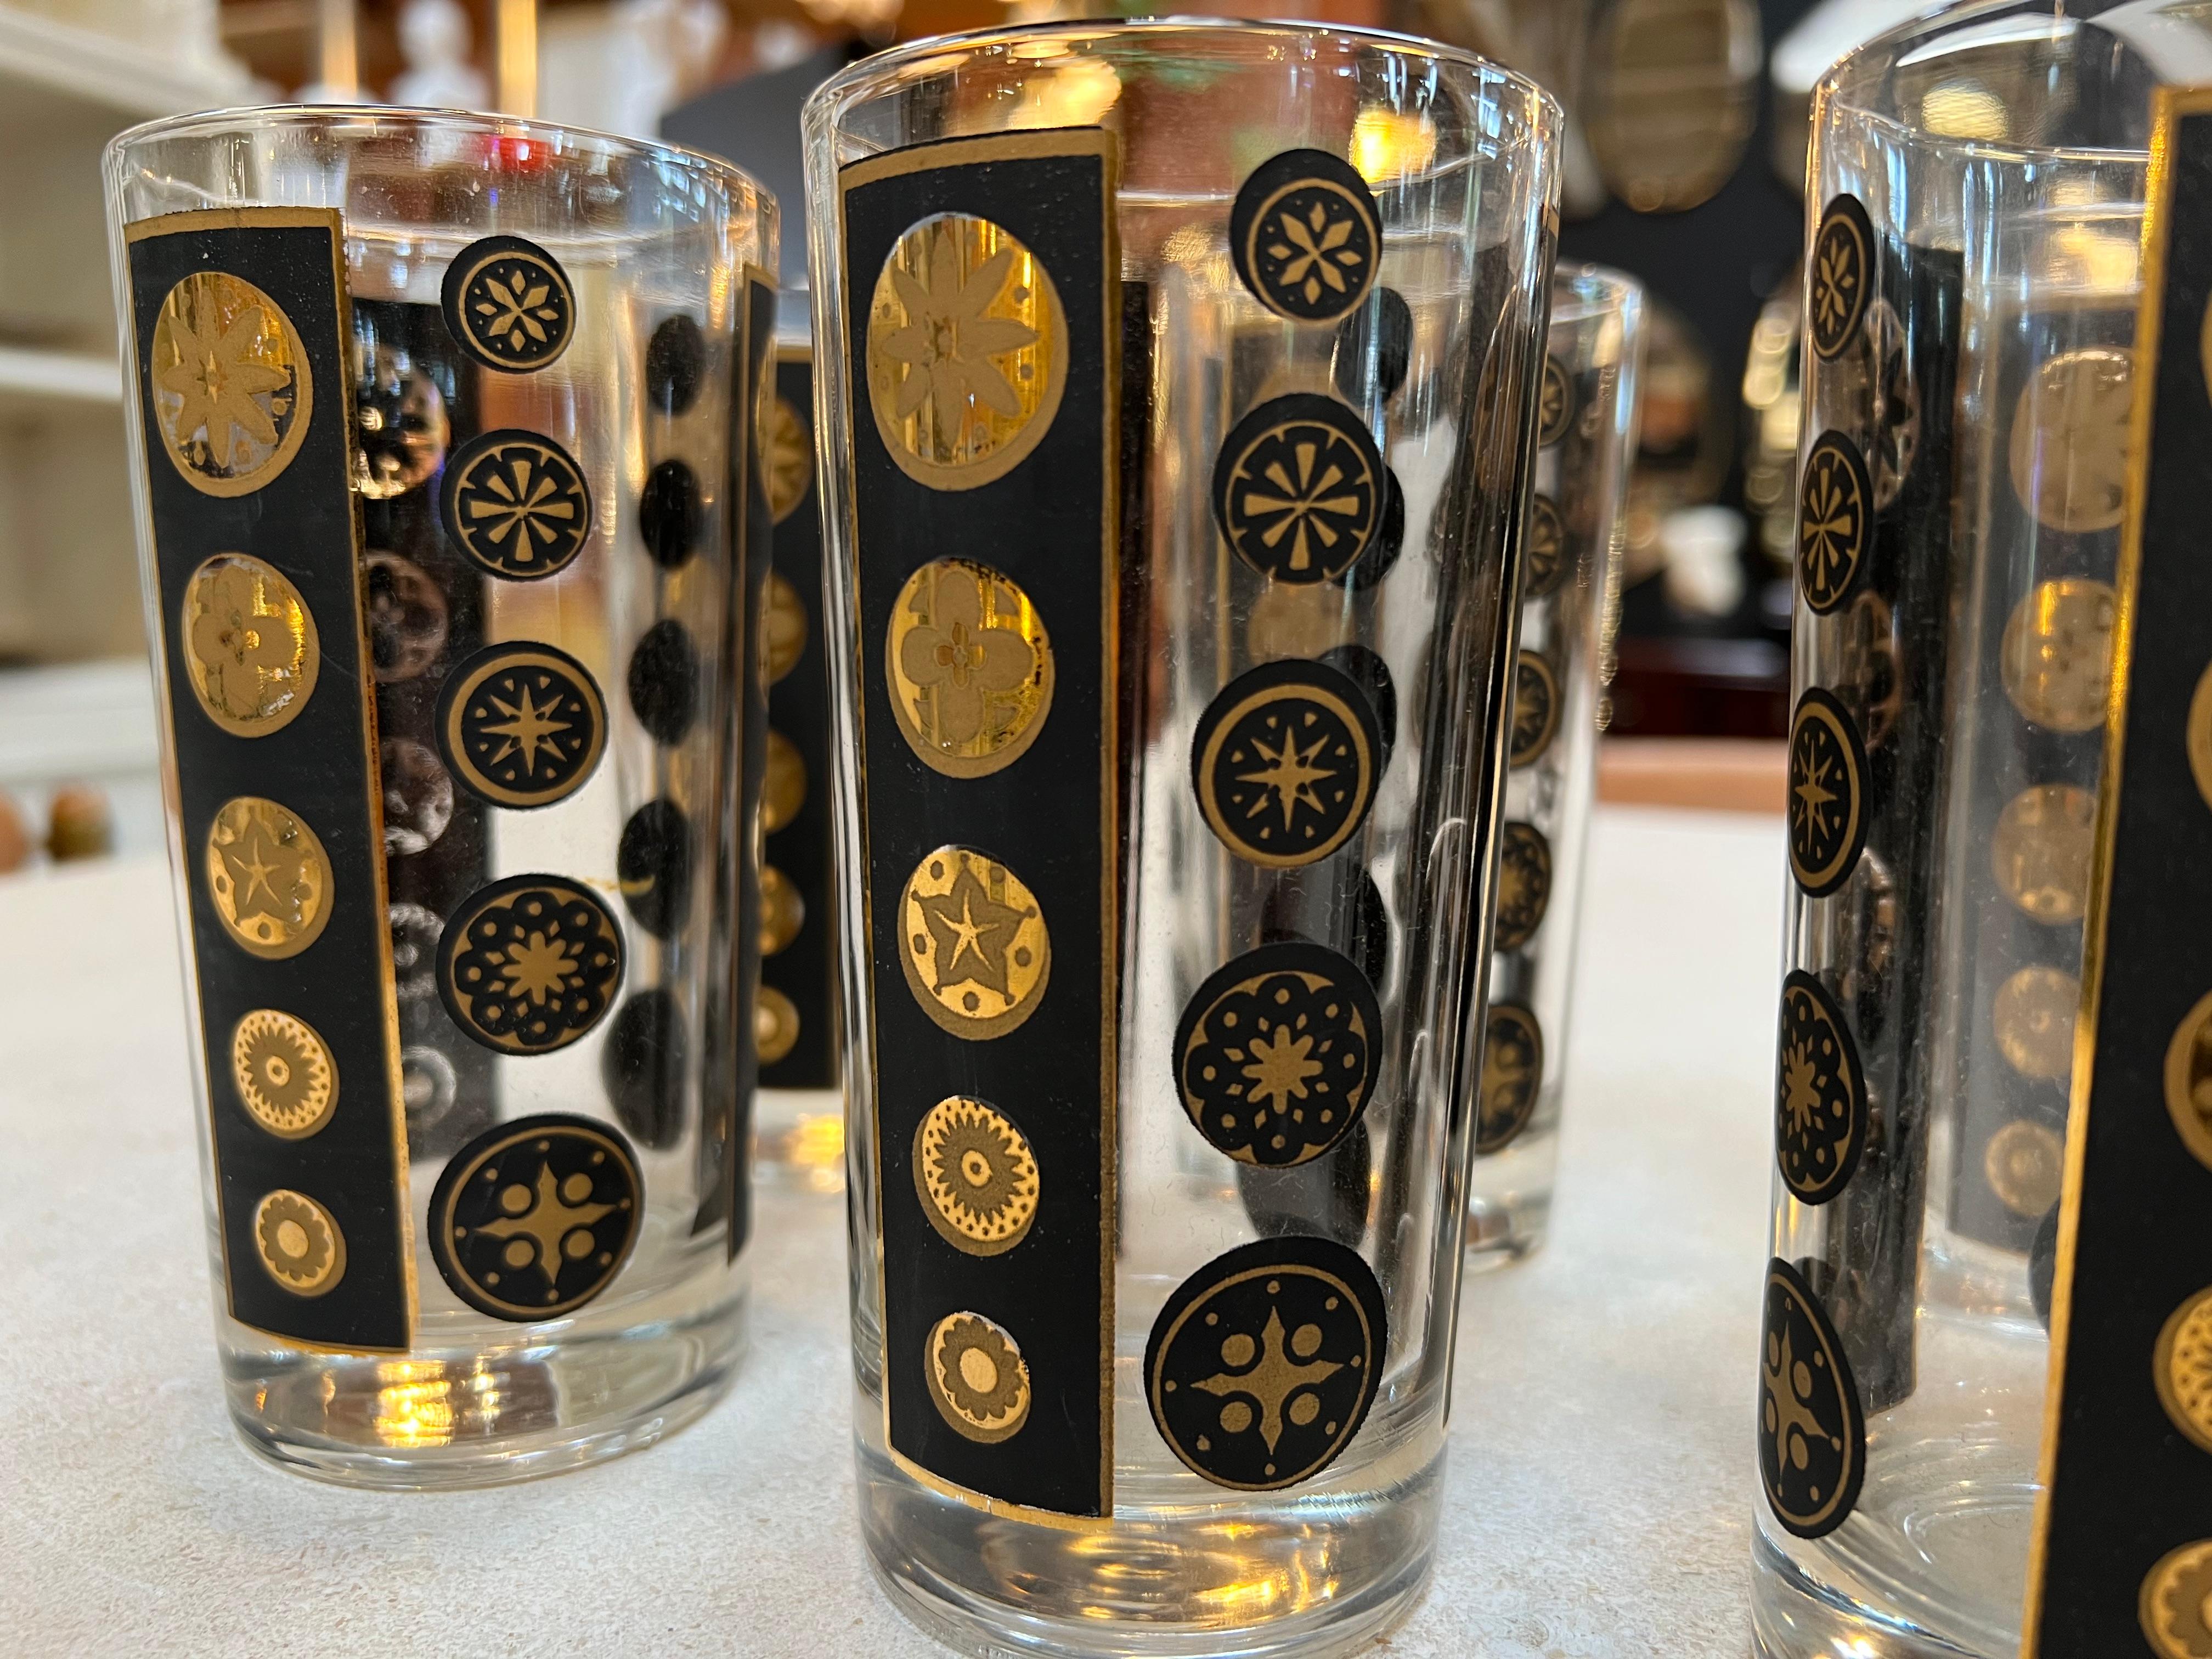 Entdecken Sie ein fesselndes Paar von 6 hohen Gläsern im Fornasetti-Stil aus den 1980er Jahren. Diese eleganten Glaskörper verkörpern die Essenz des italienischen Designs und strahlen den zeitlosen Charme von Fornasetti aus. Sie sind groß und